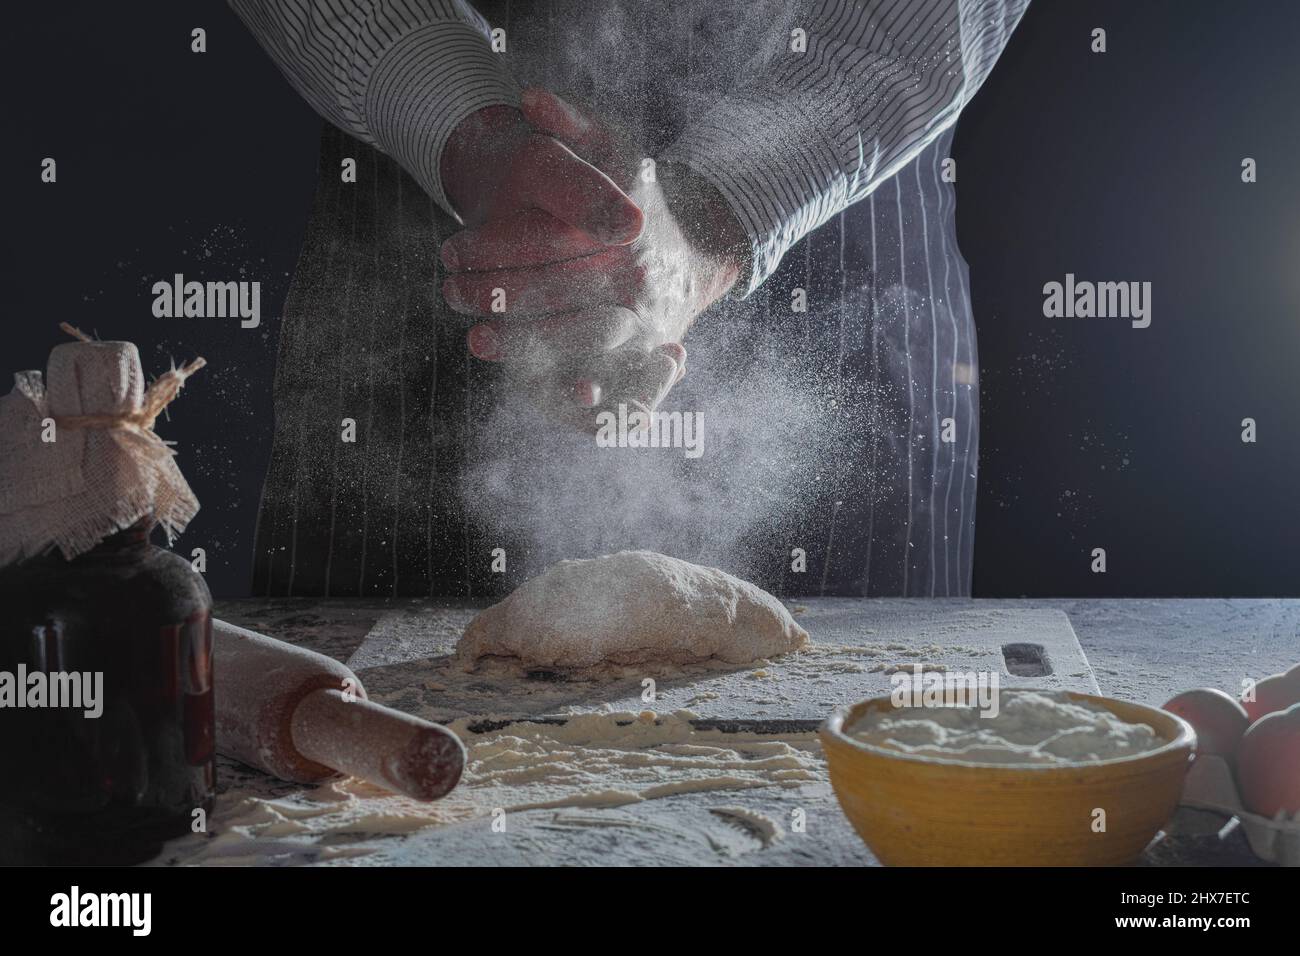 Les mains du cuisinier sont dans la farine et pétrir la pâte. Le cuisinier pétrit la pâte pour la cuisson, fait des éclaboussures de farine. Couleurs décolorées avec foc sélectif Banque D'Images